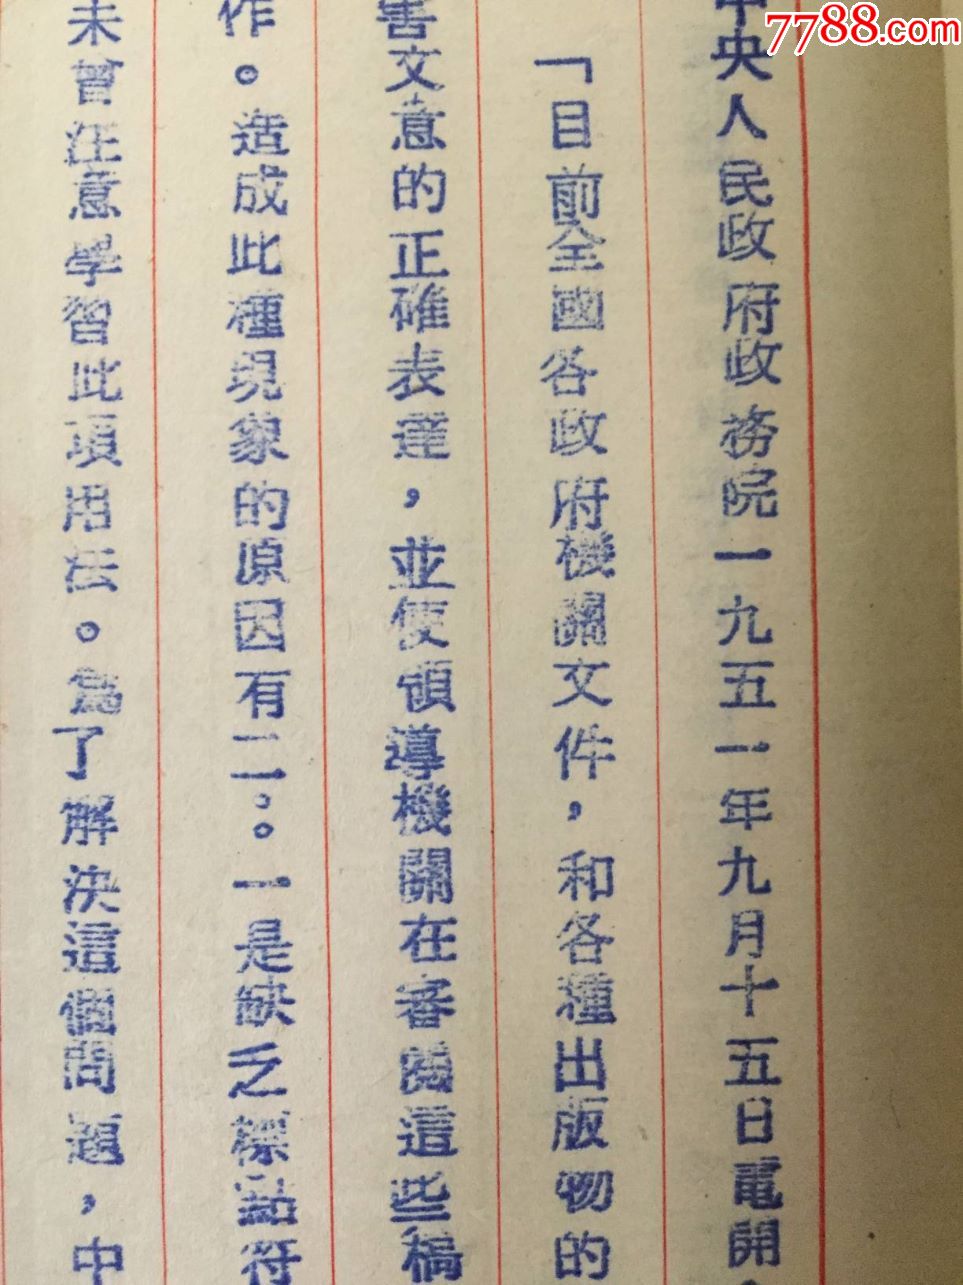 解放初期,1951年,指定文字秘书订正标点符号使用命令:皖南人民行政